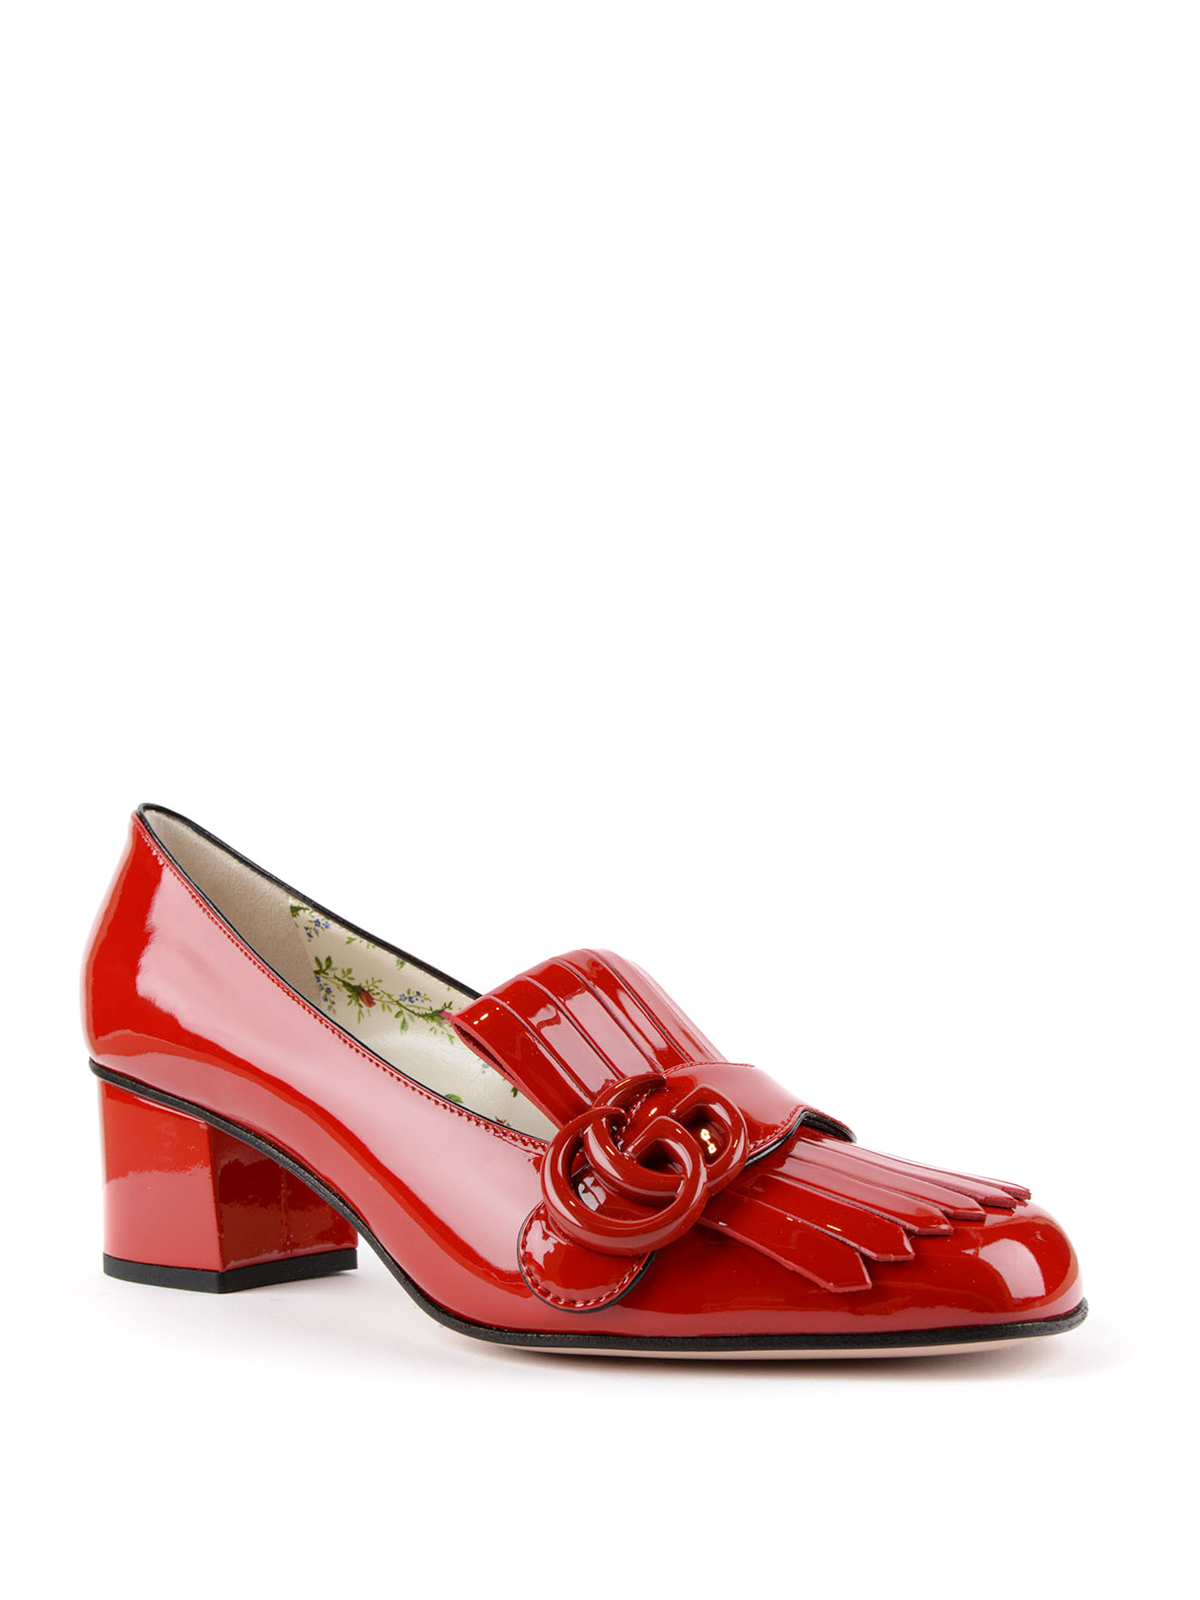 Gucci - Marmont patent leather pumps - court shoes - 474510BNC006433